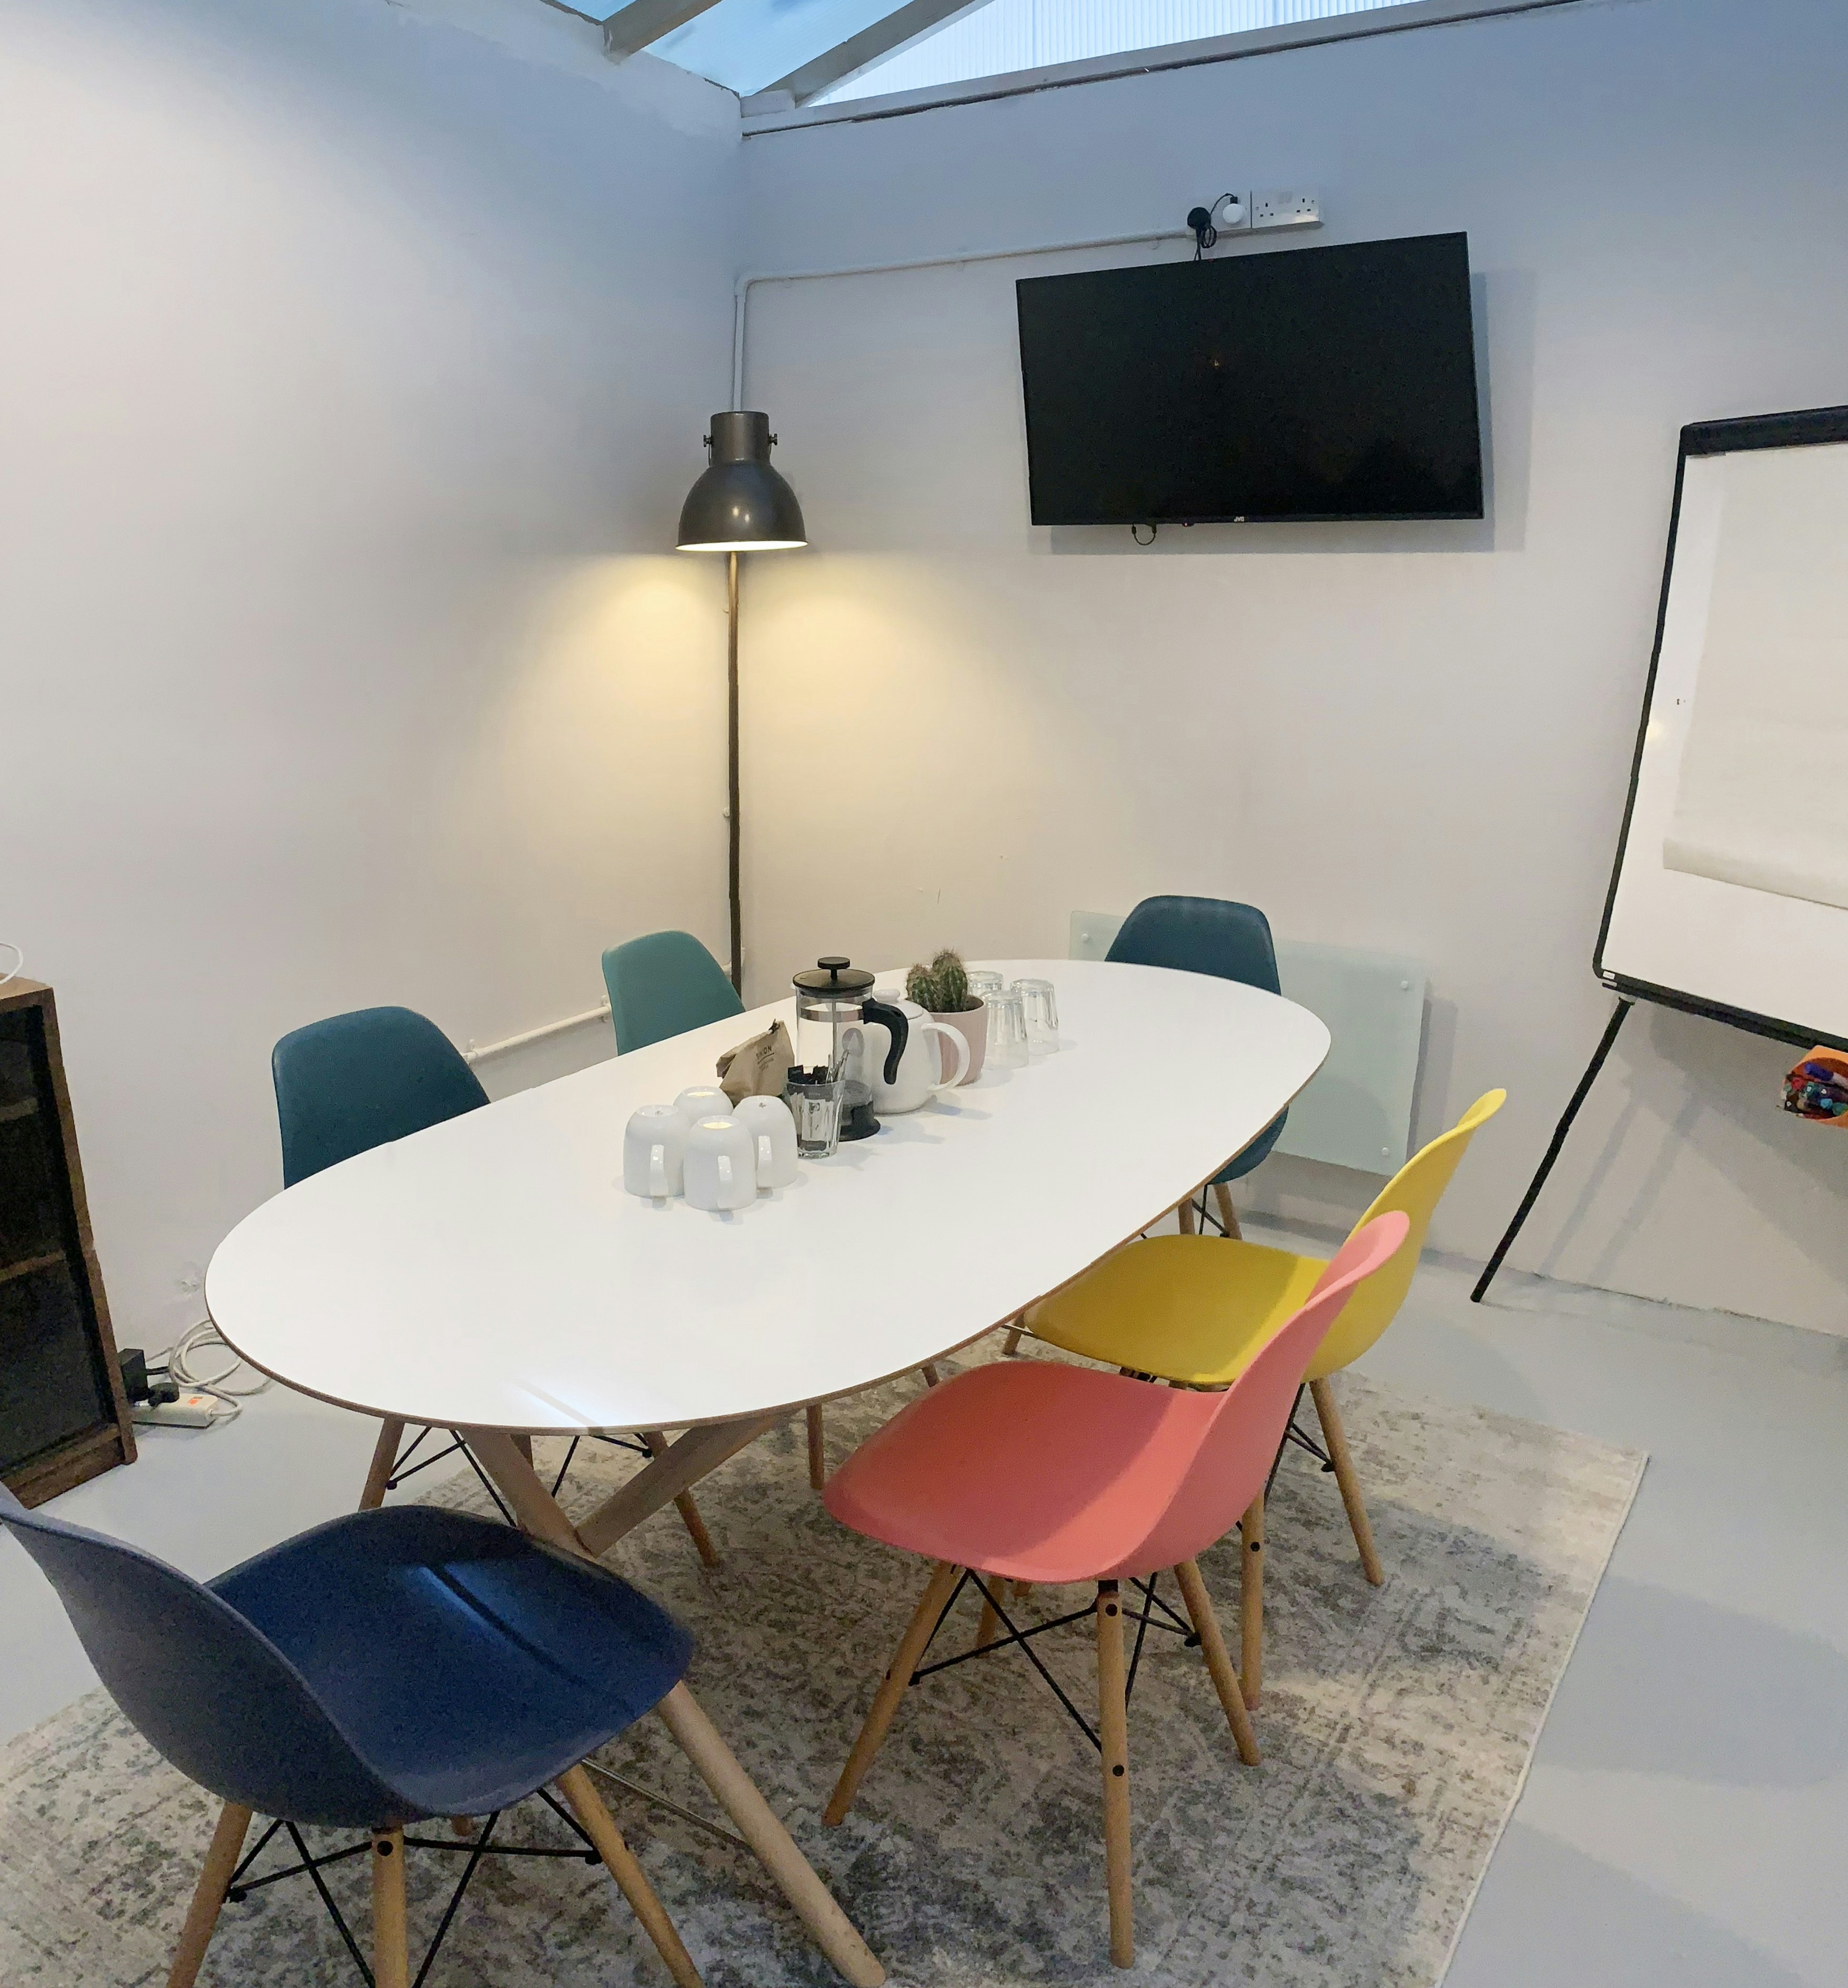 ARK coworking - Meeting Room image 1